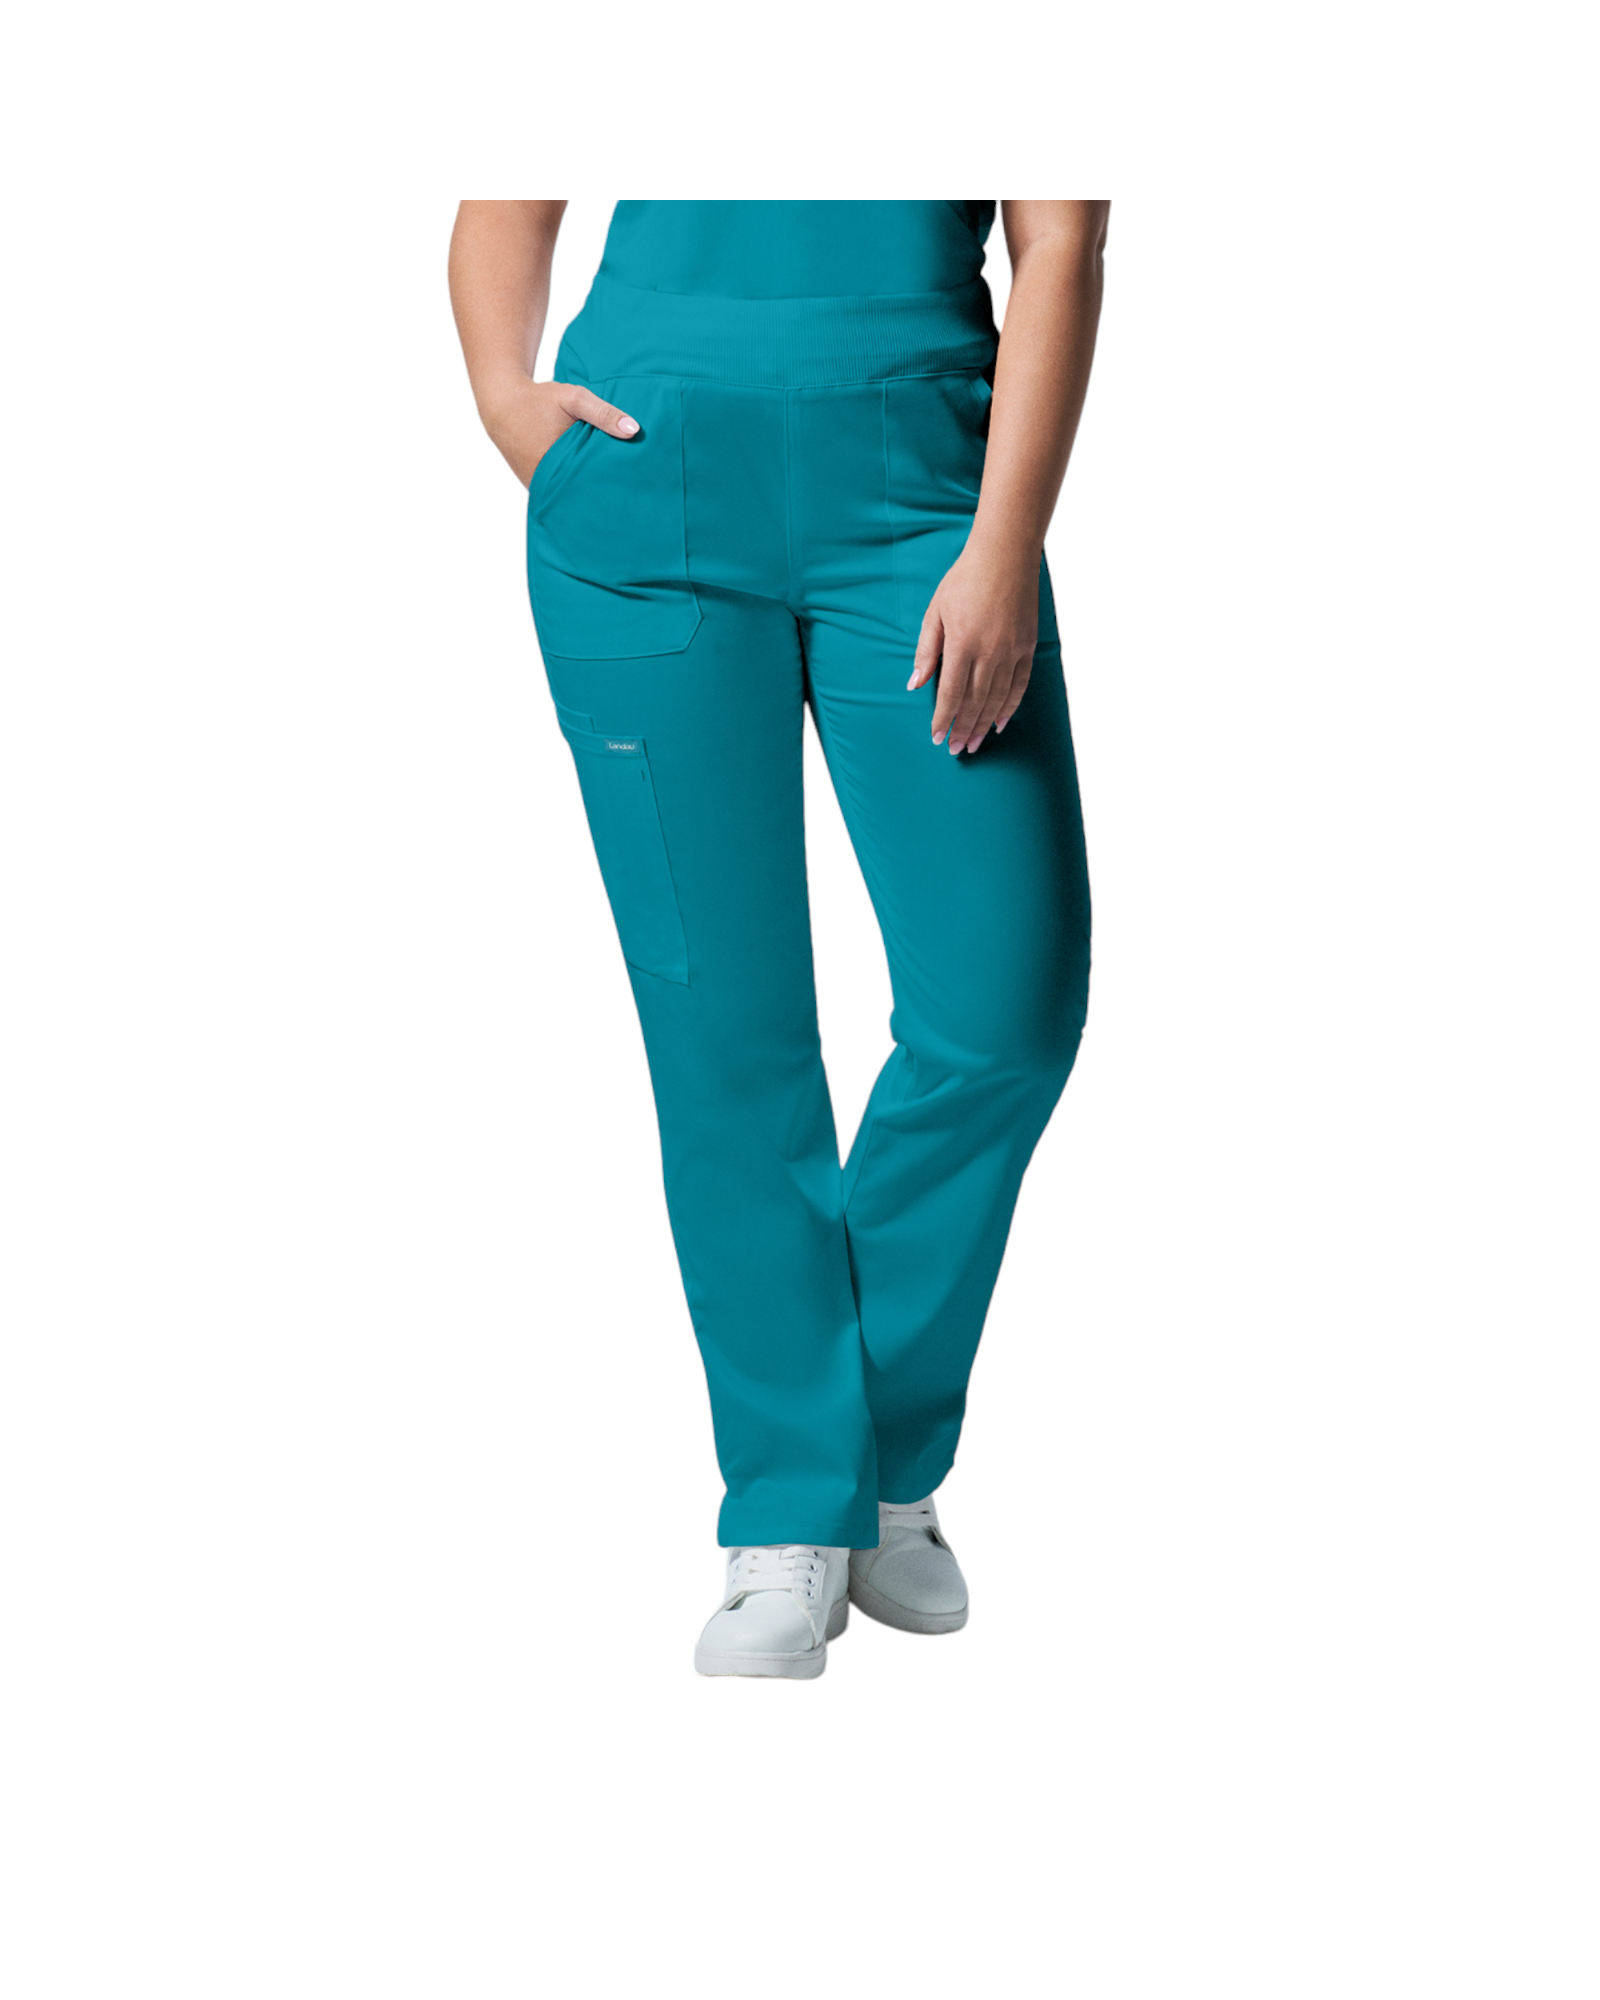 Pantalons  6 poches pour femmes Landau Proflex #LB405 couleur  Sarcelle